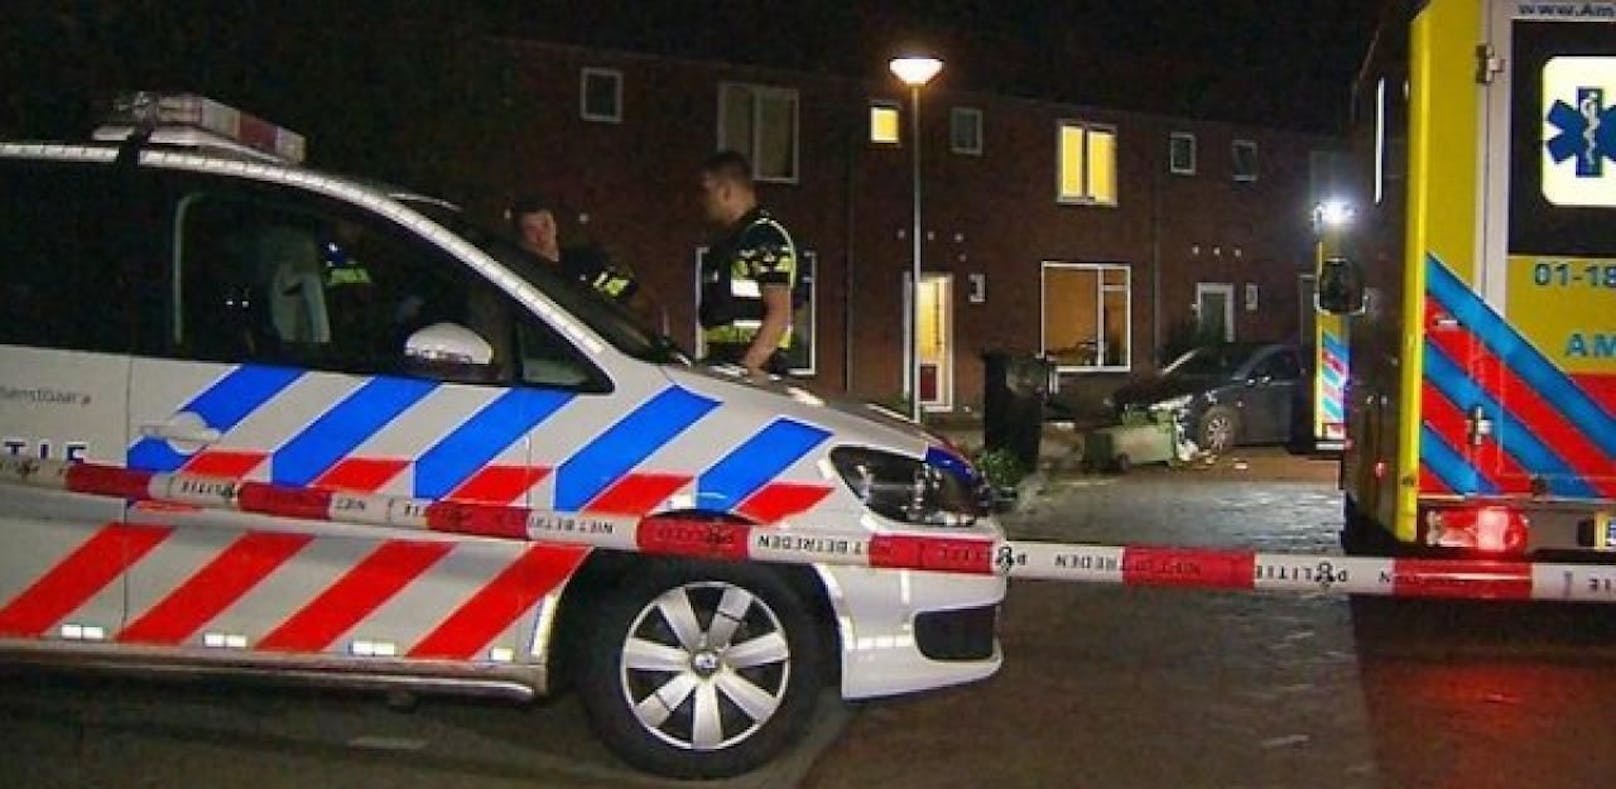 In der holländischen Stadt Maastricht hat ein Angreifer mindestens zwei Person mit einem Messer getötet.